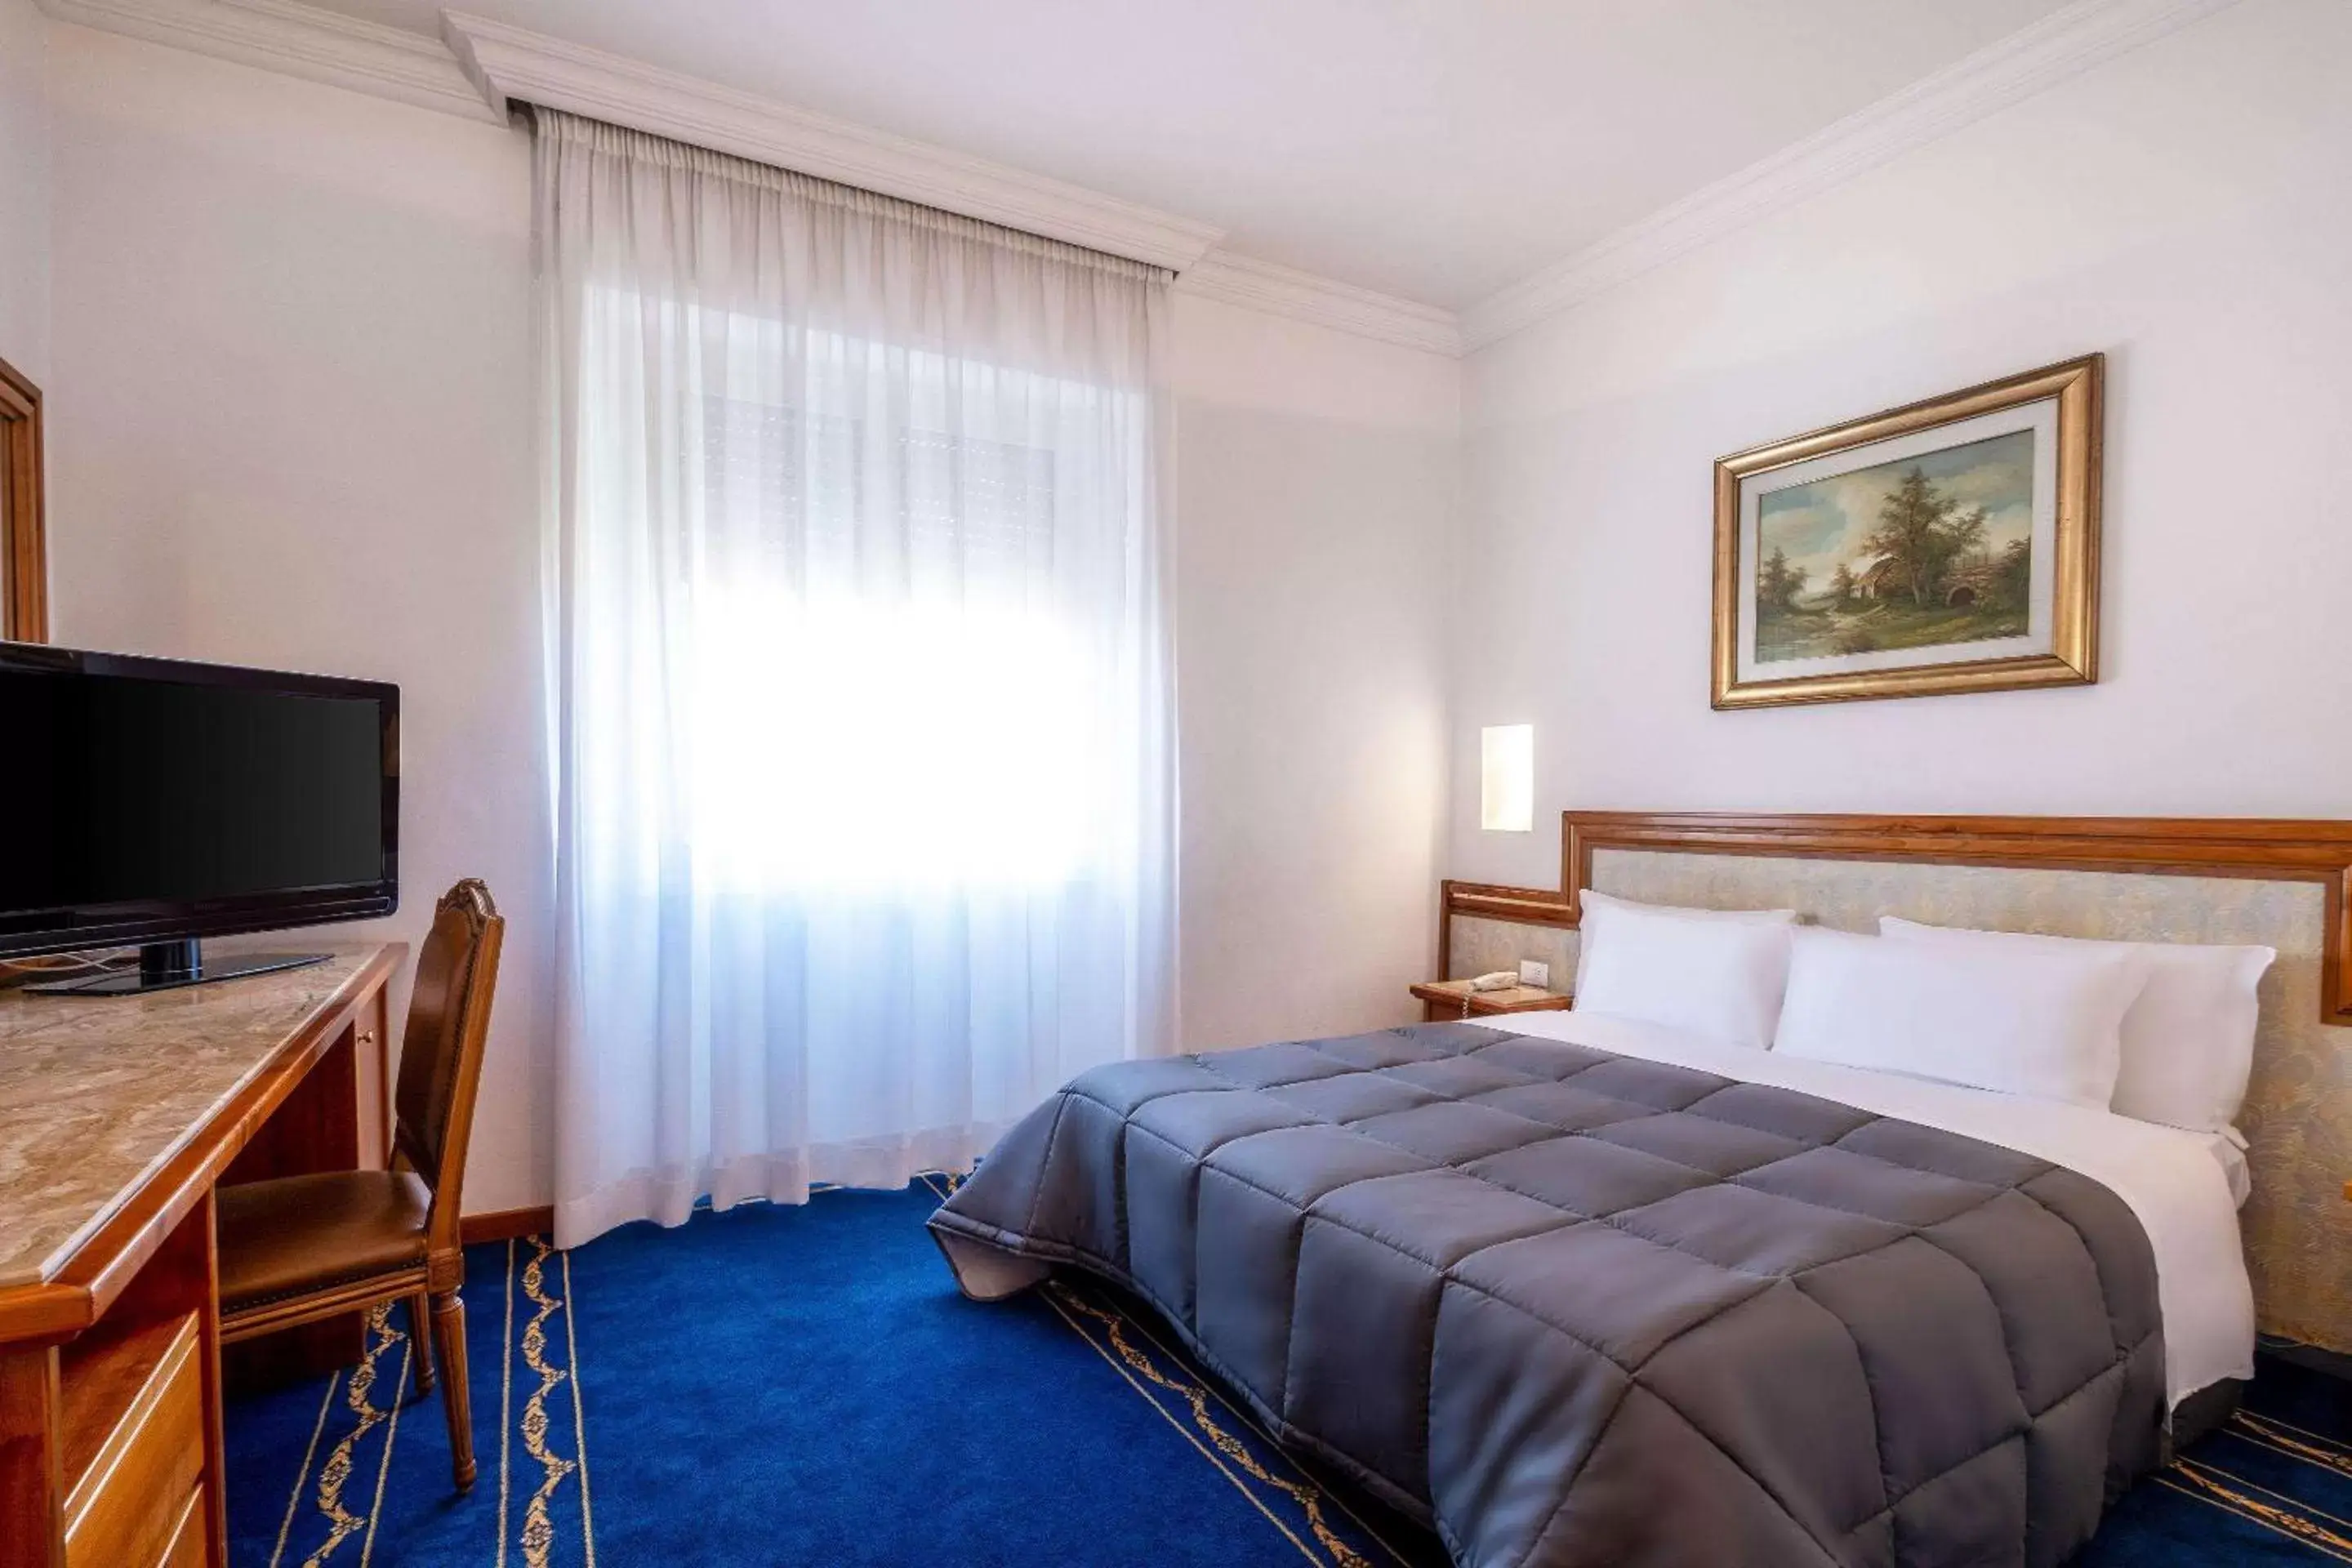 Bedroom, Bed in Quality Hotel Nova Domus